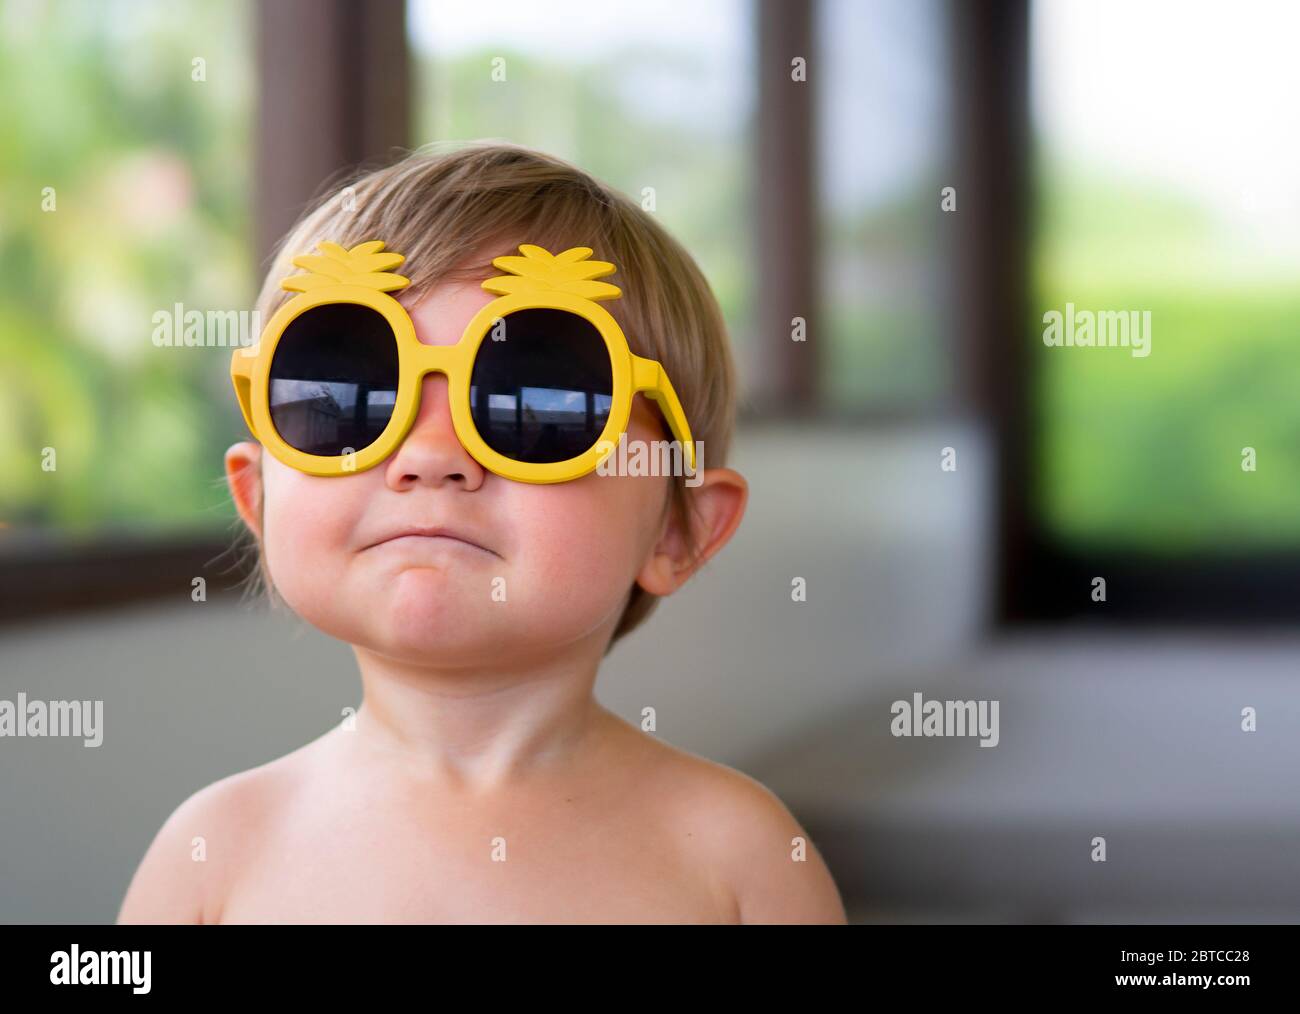 Ritratto di un ragazzo di due anni che indossa occhiali da sole gialli guardando nella macchina fotografica Foto Stock